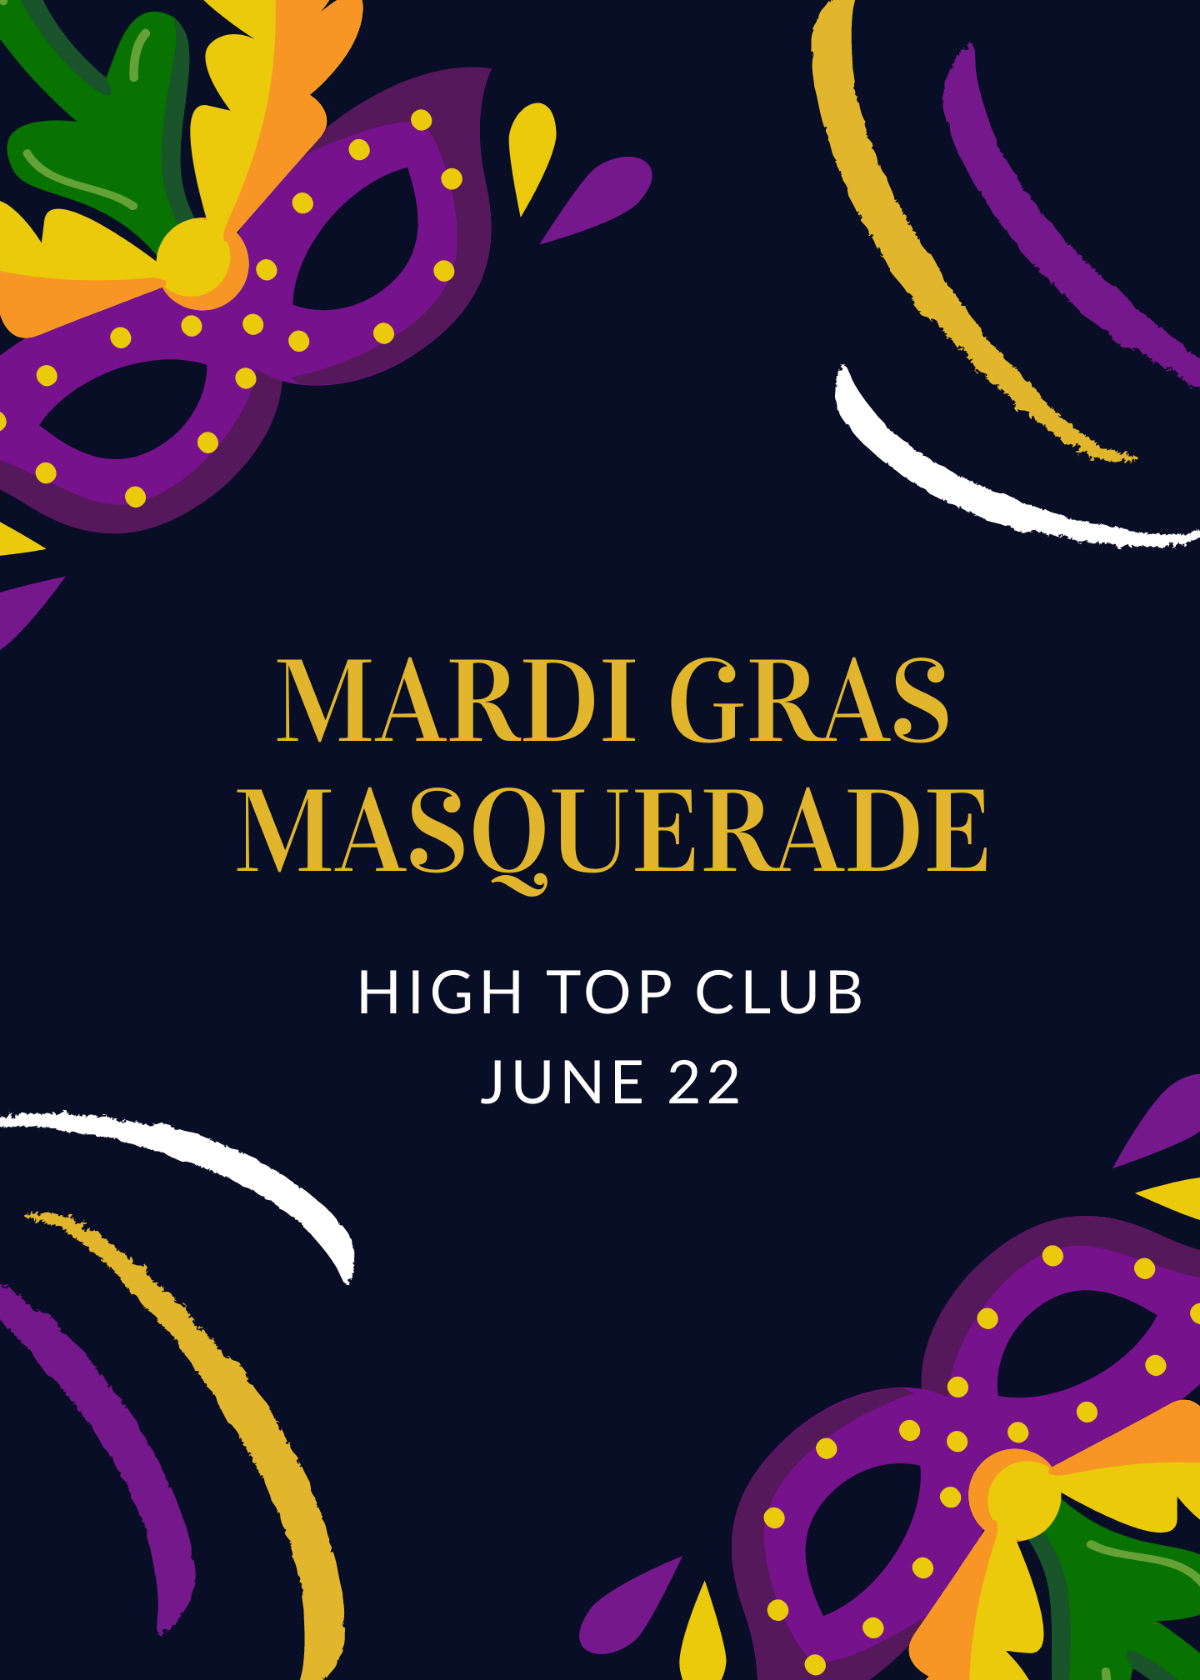 Mardi Gras Masquerade Invitation Template